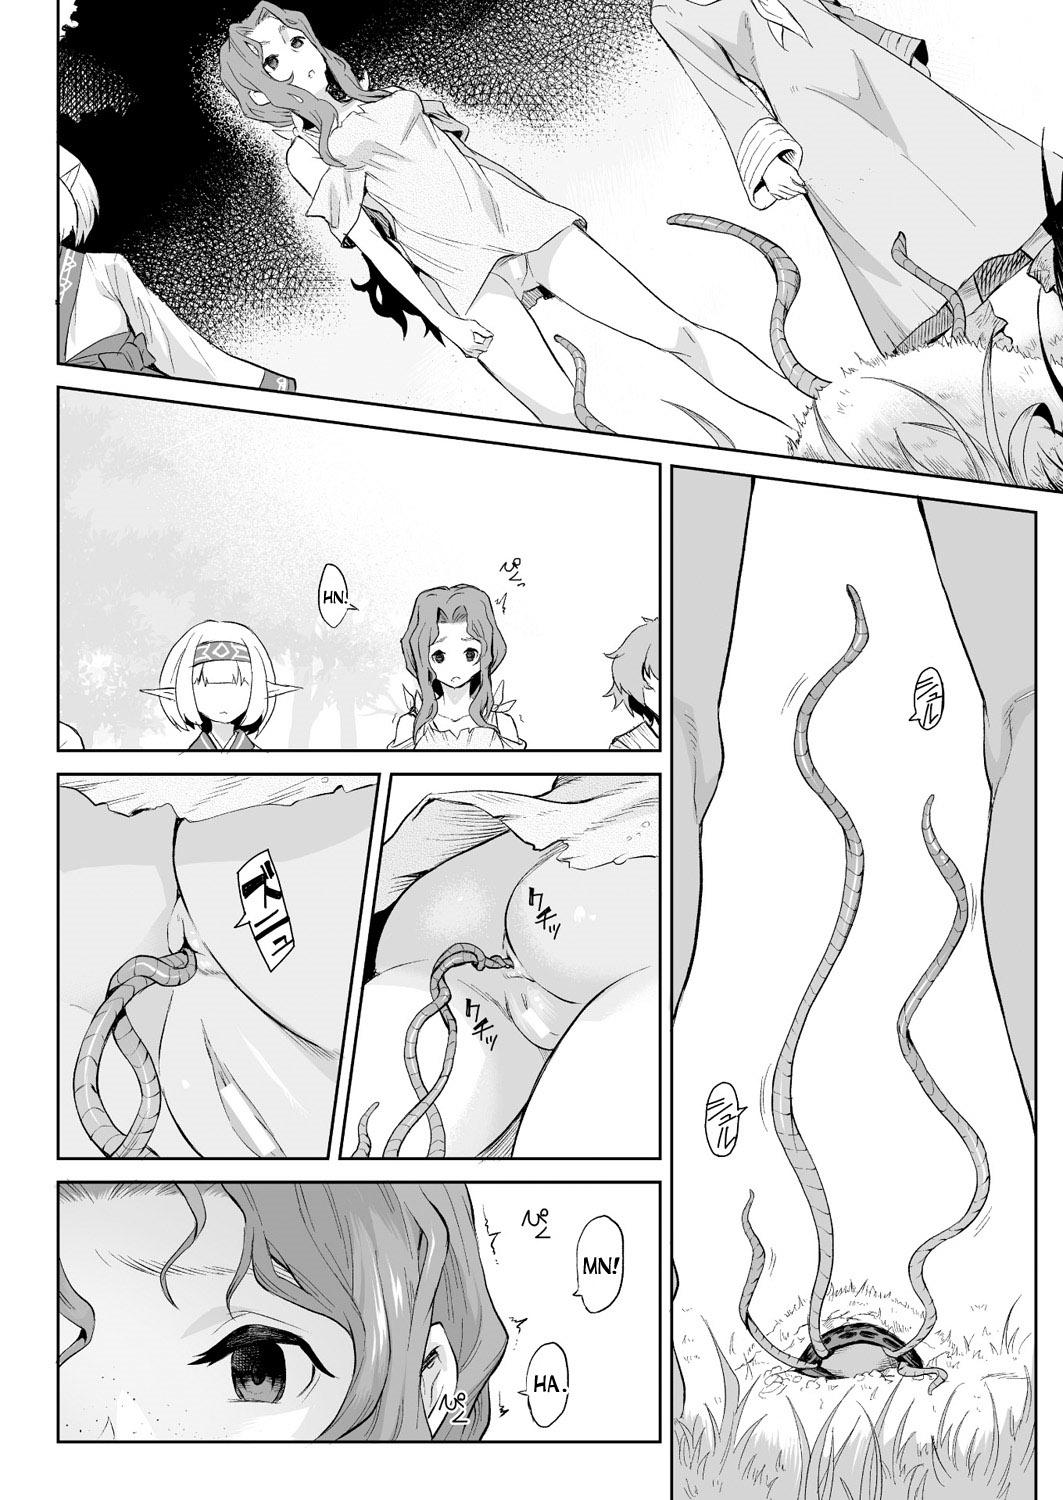 Sex Massage Kiseiju Vol. 1 | Parasite Tree Vol. 1 Freeporn - Page 4